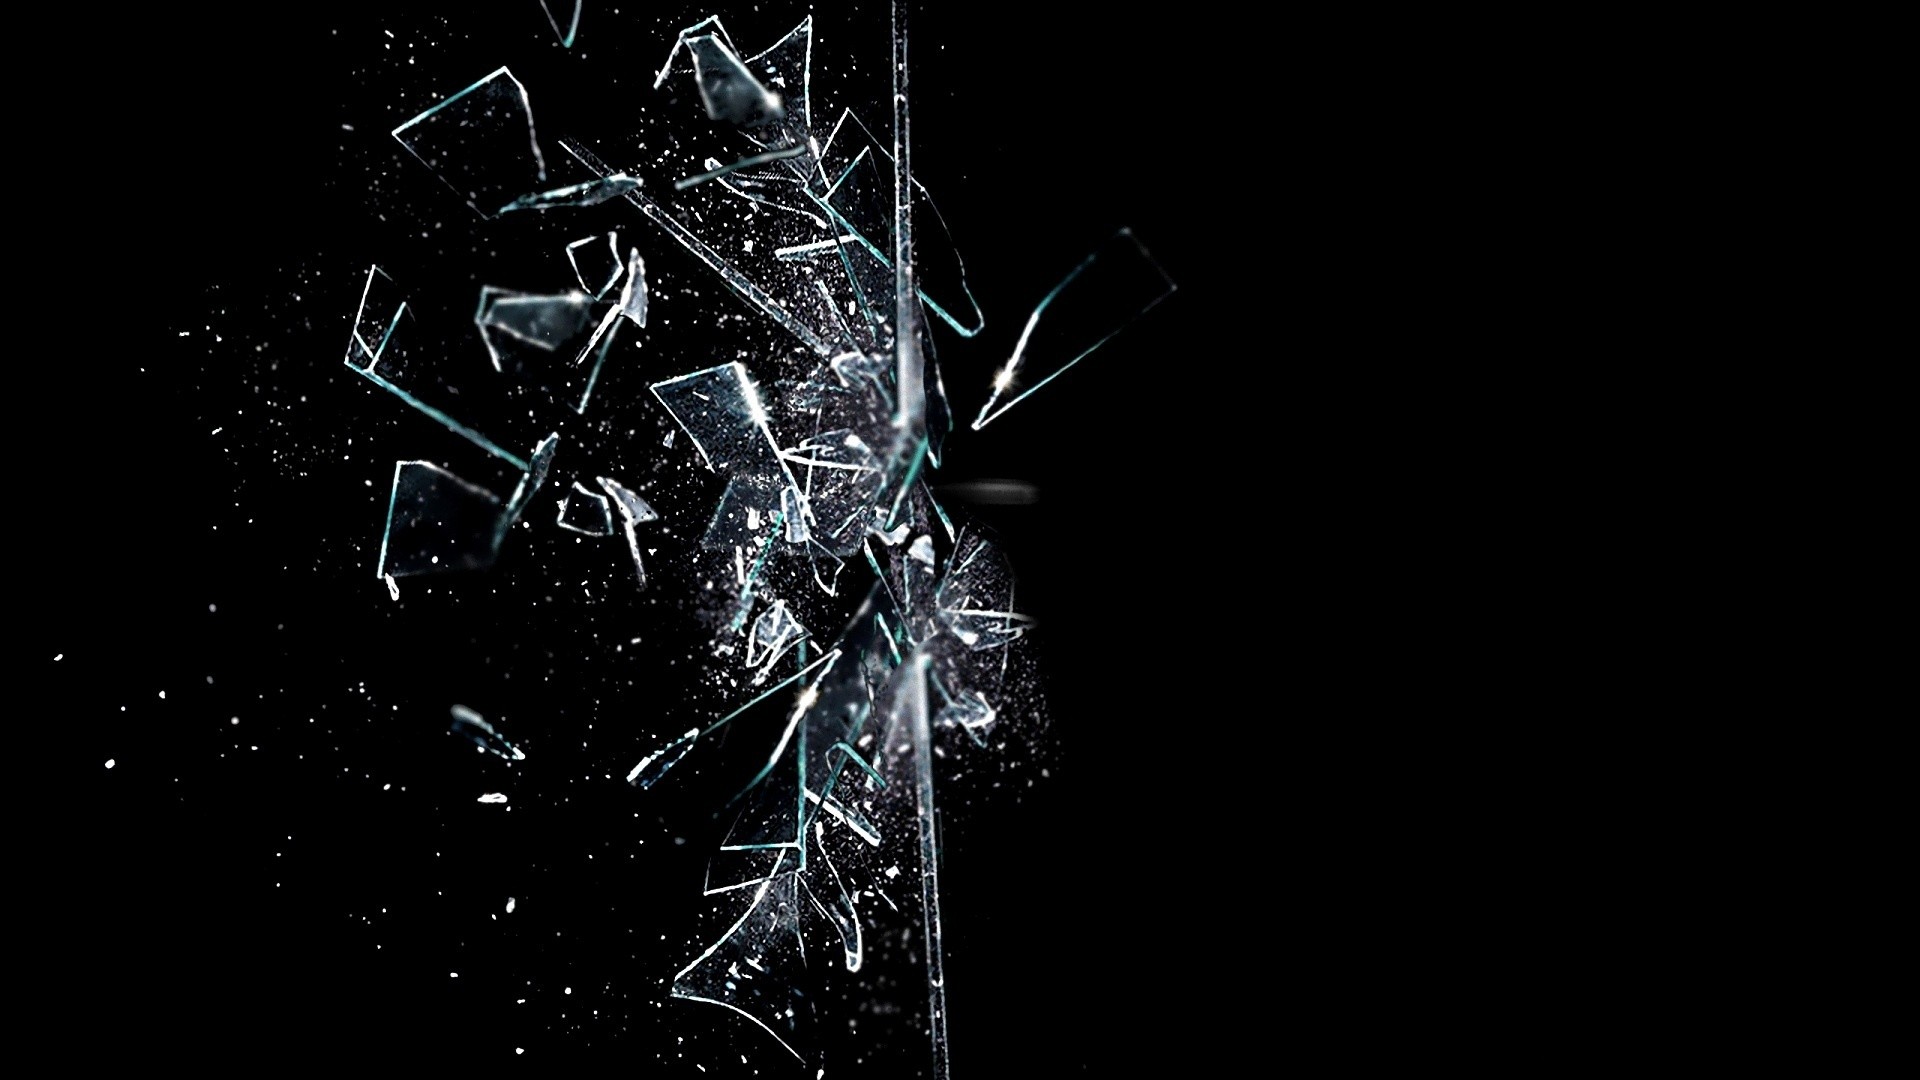 46+] Broken Glass Wallpaper - WallpaperSafari